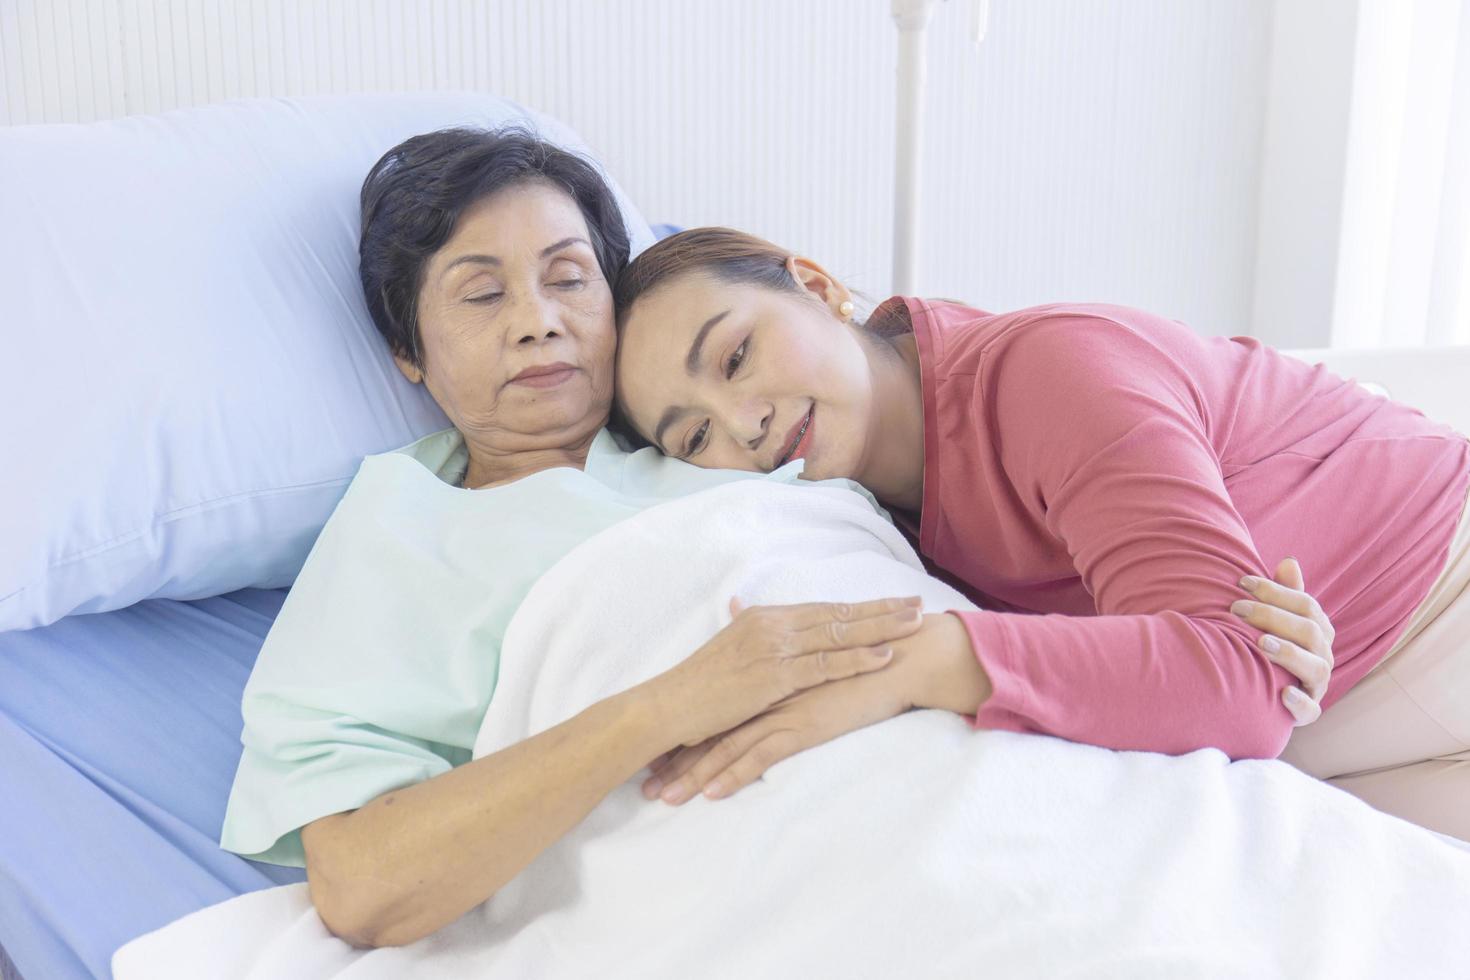 una donna asiatica abbraccia la madre che si sta riprendendo su un letto d'ospedale. foto